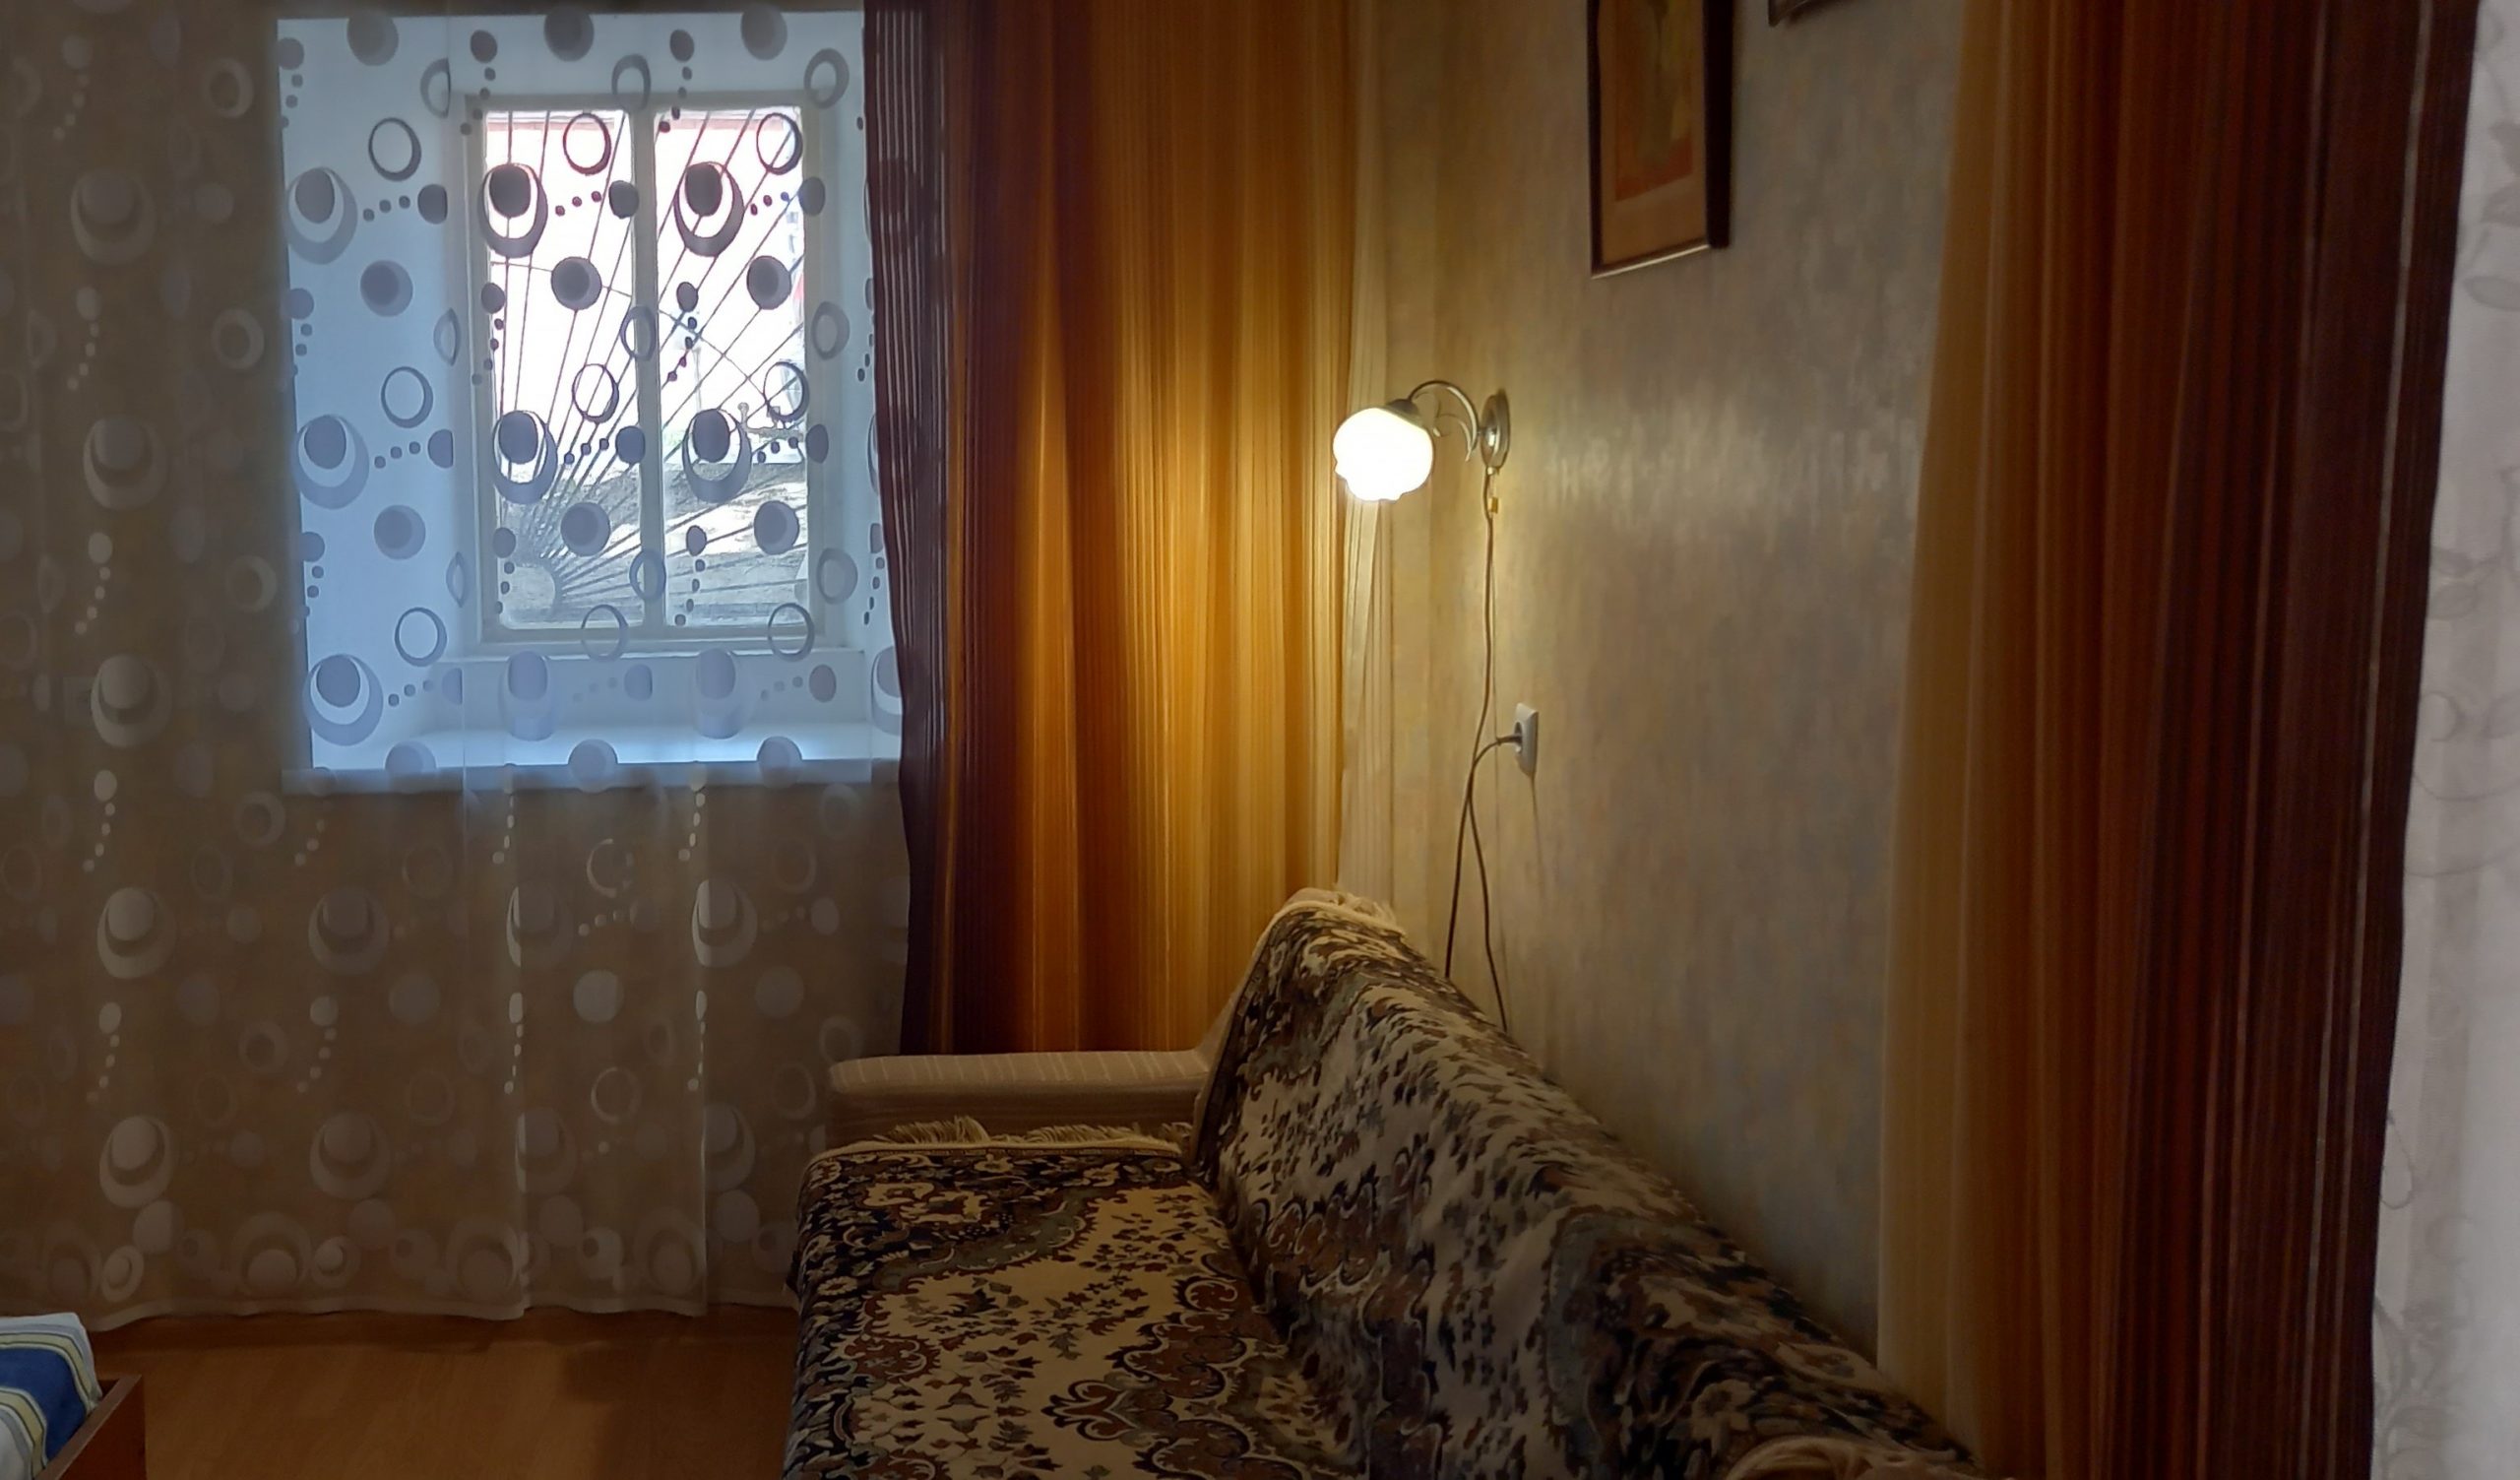 Однокомнатная квартира на ул. Чернышевского 19 (31кв.м)до 2 гостей